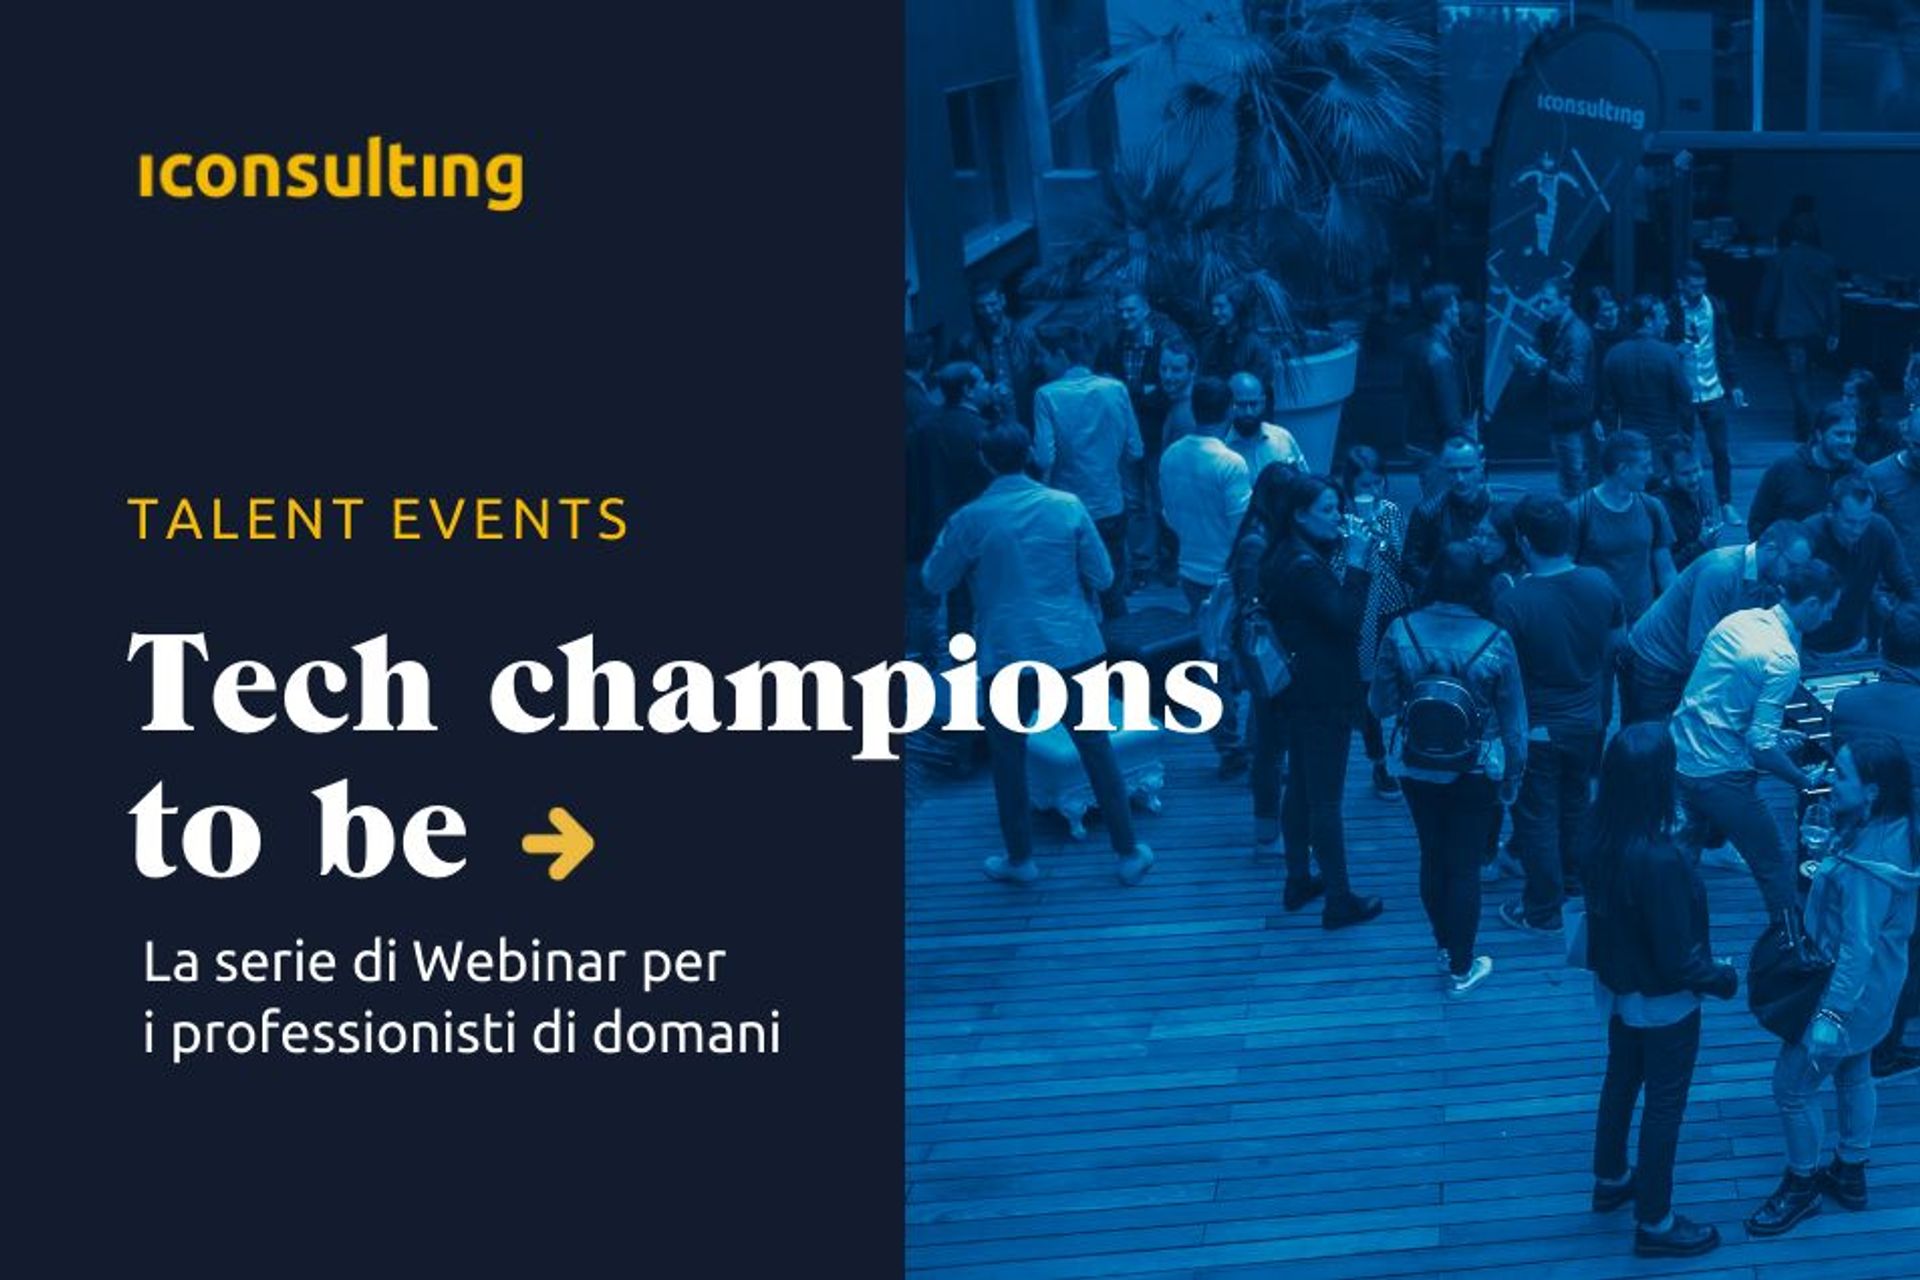 La key visual degli incontri digitali "Tech Champions to be" di iConsulting del 18 maggio e del 22 giugno 2022